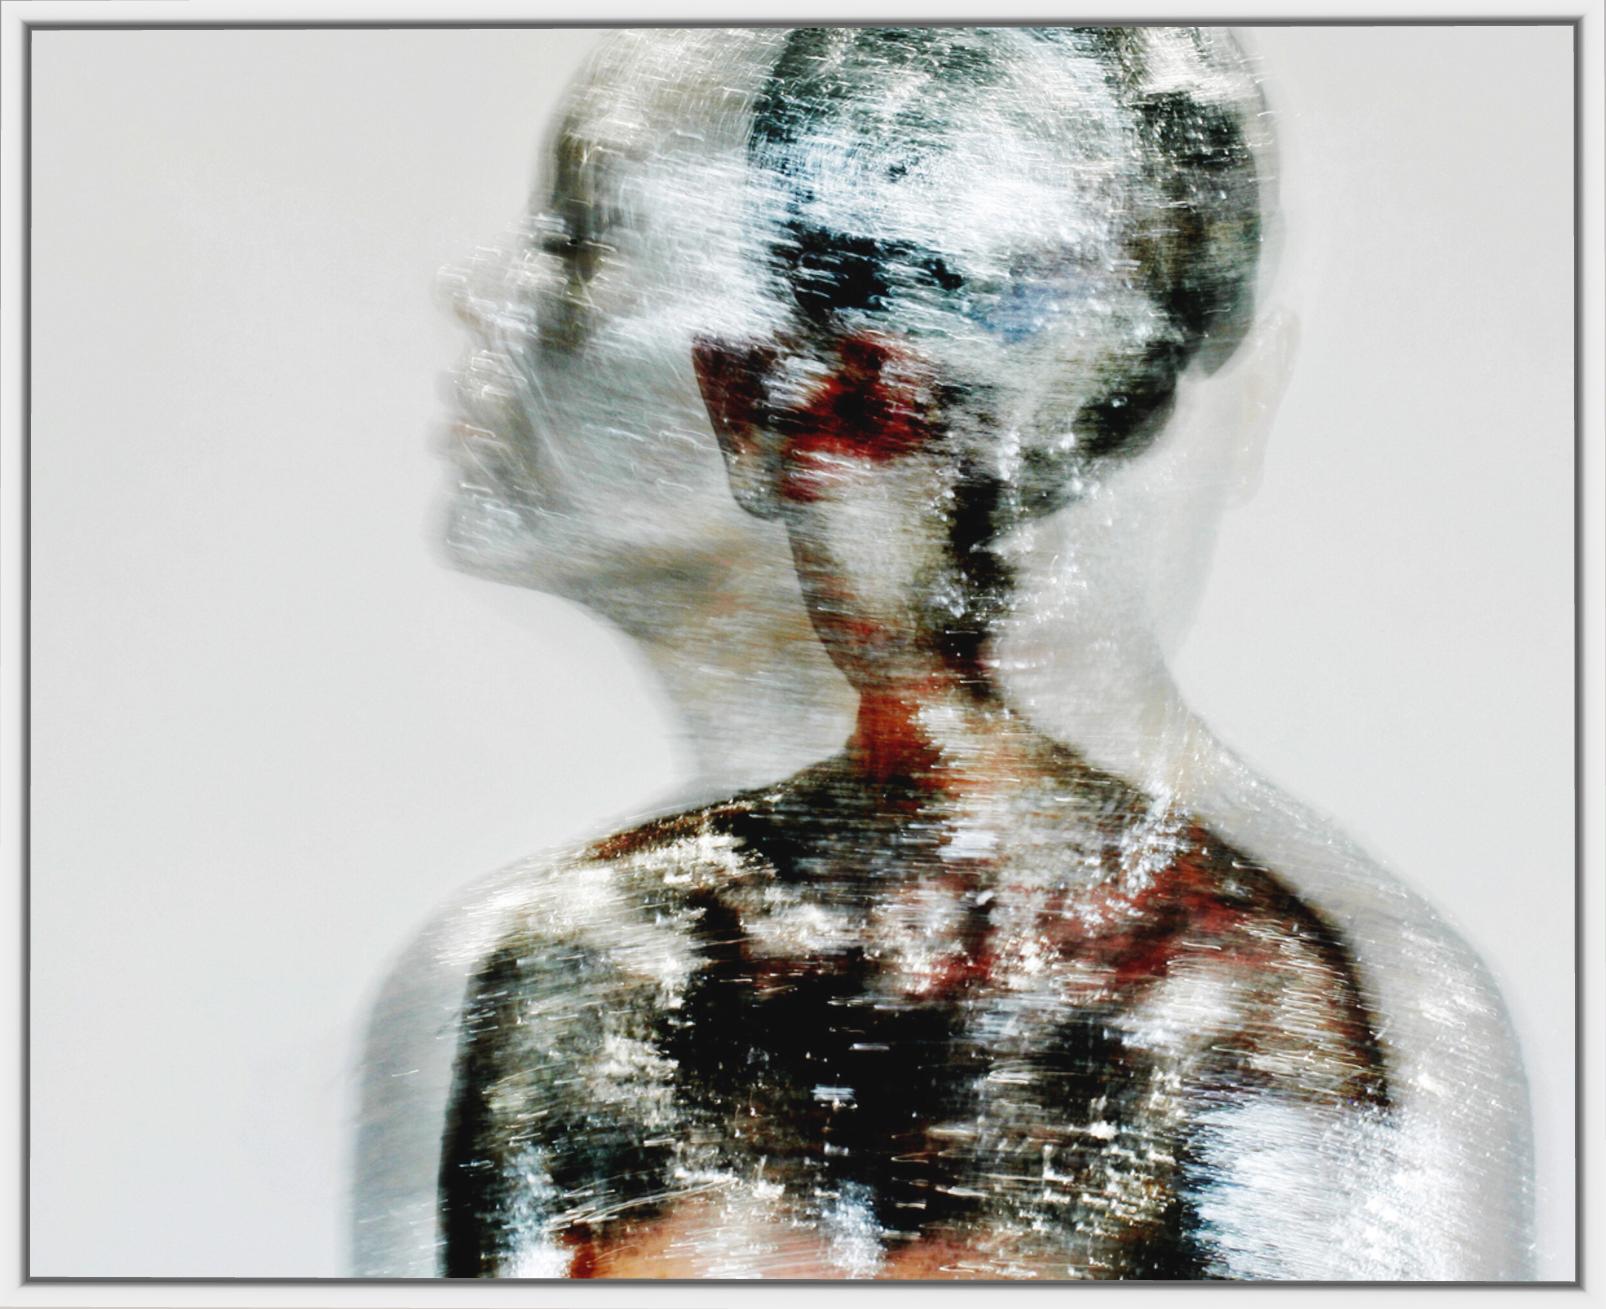 Human Alien – Abstrakt-expressionistische Kunstfotografie (Abstrakter Expressionismus), Photograph, von Roger Reist